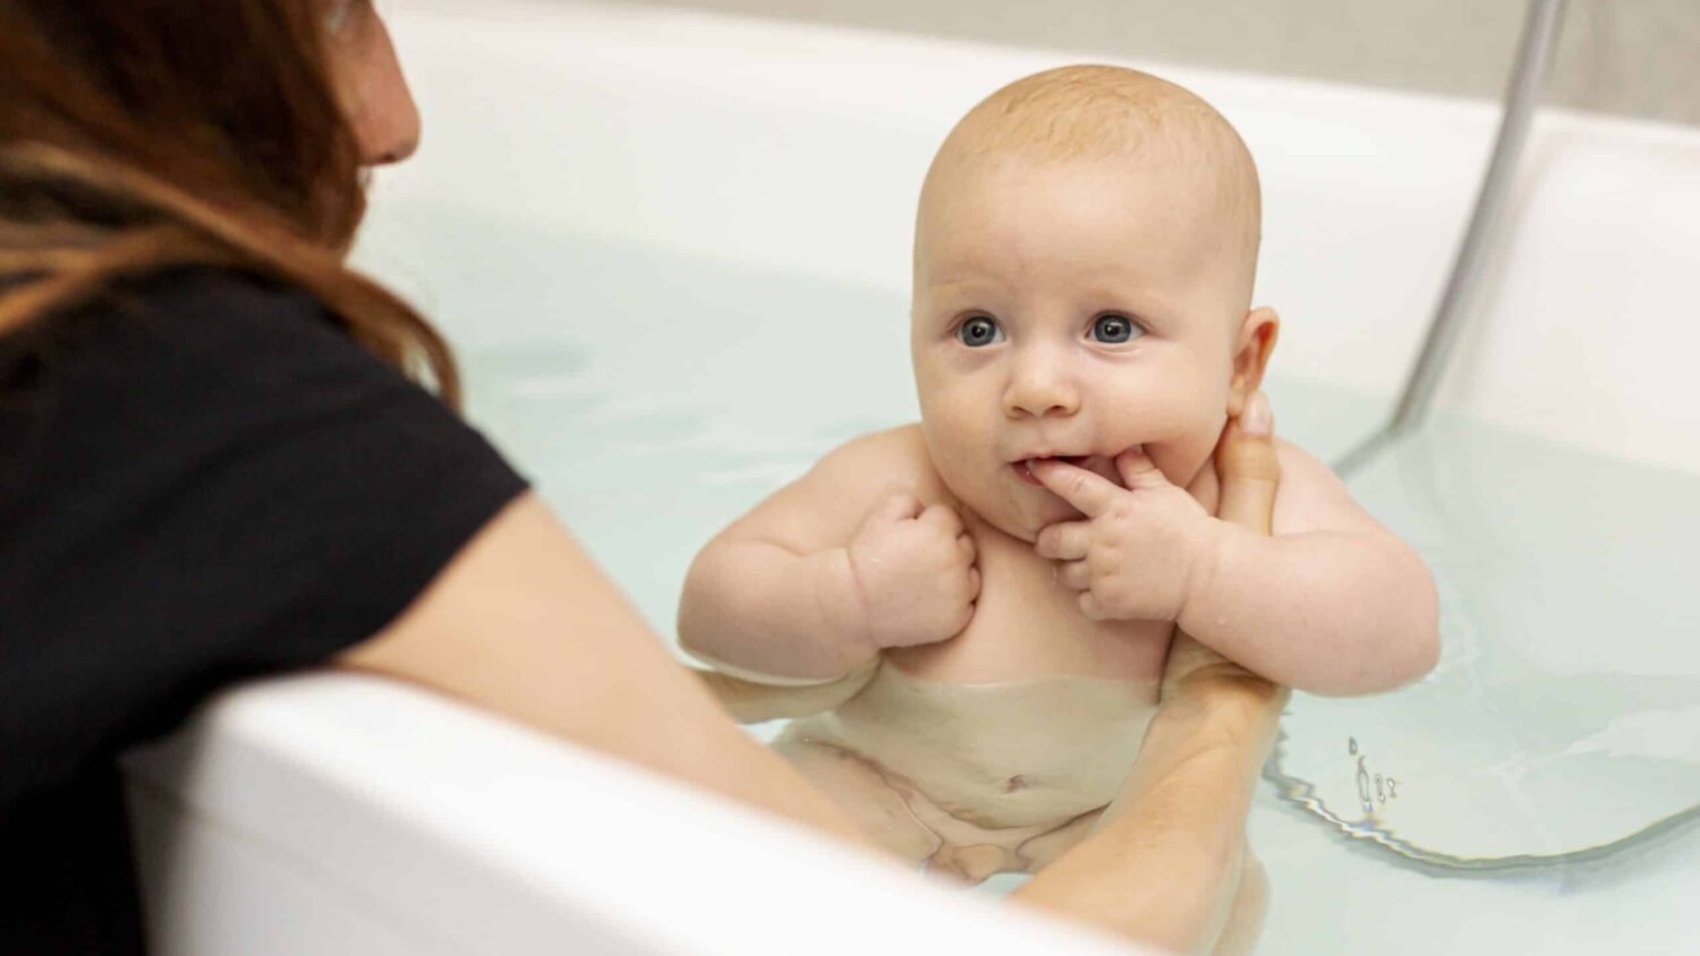 آموزش، نکات مهم و مراحل حمام نوزاد در منزل نرس کو